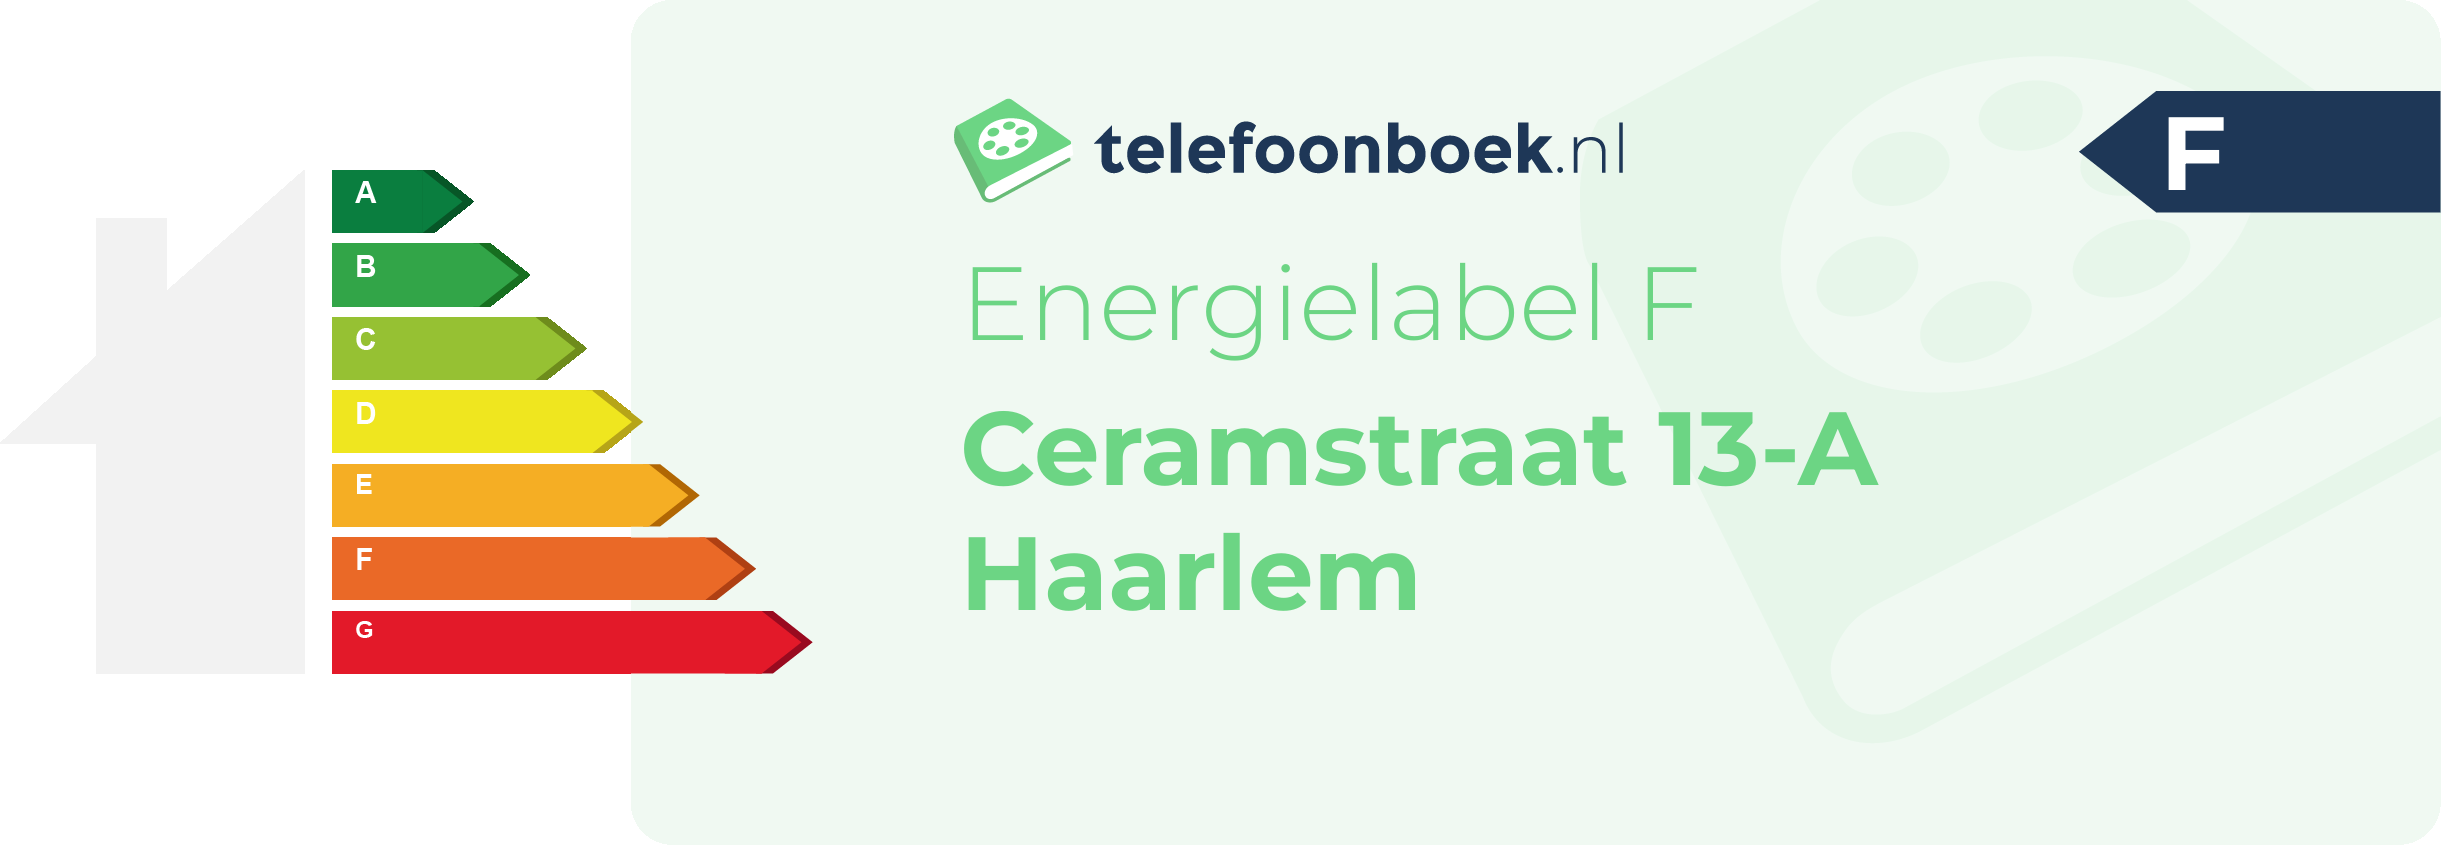 Energielabel Ceramstraat 13-A Haarlem